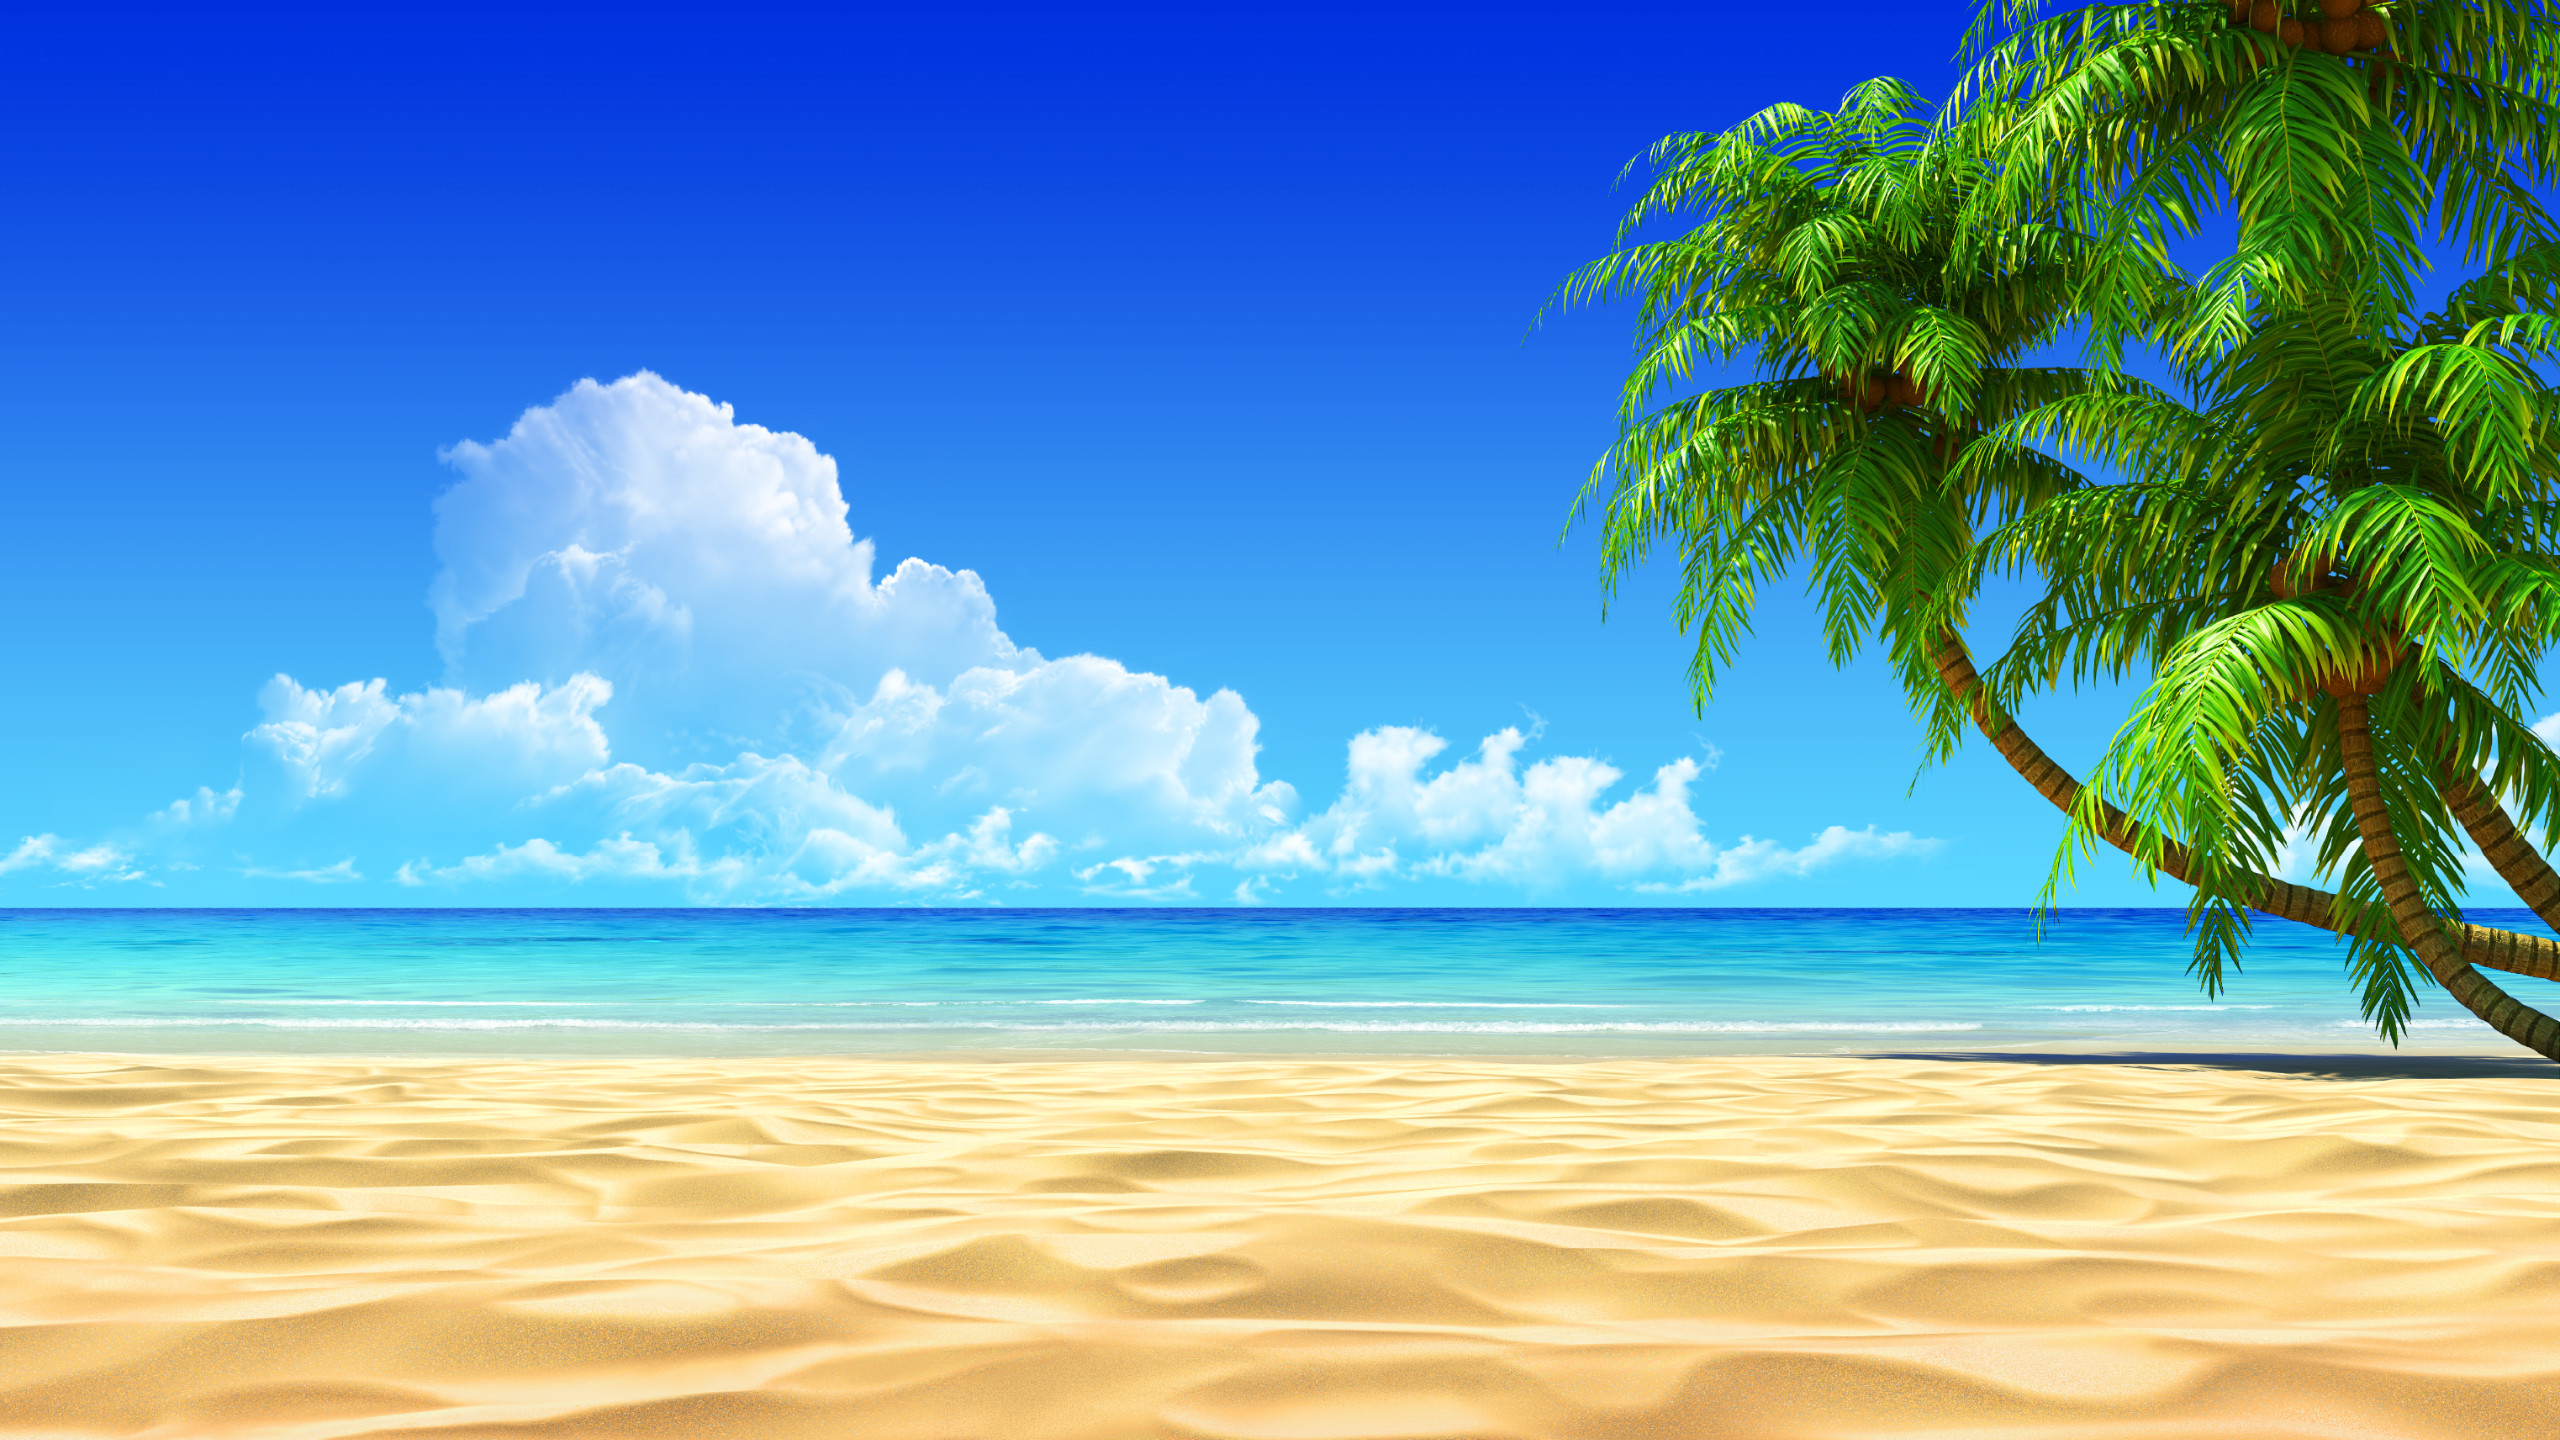 2560x1440 Download Relaxing Beach Wallpaper HD #080  px 2.64 MB Beach .